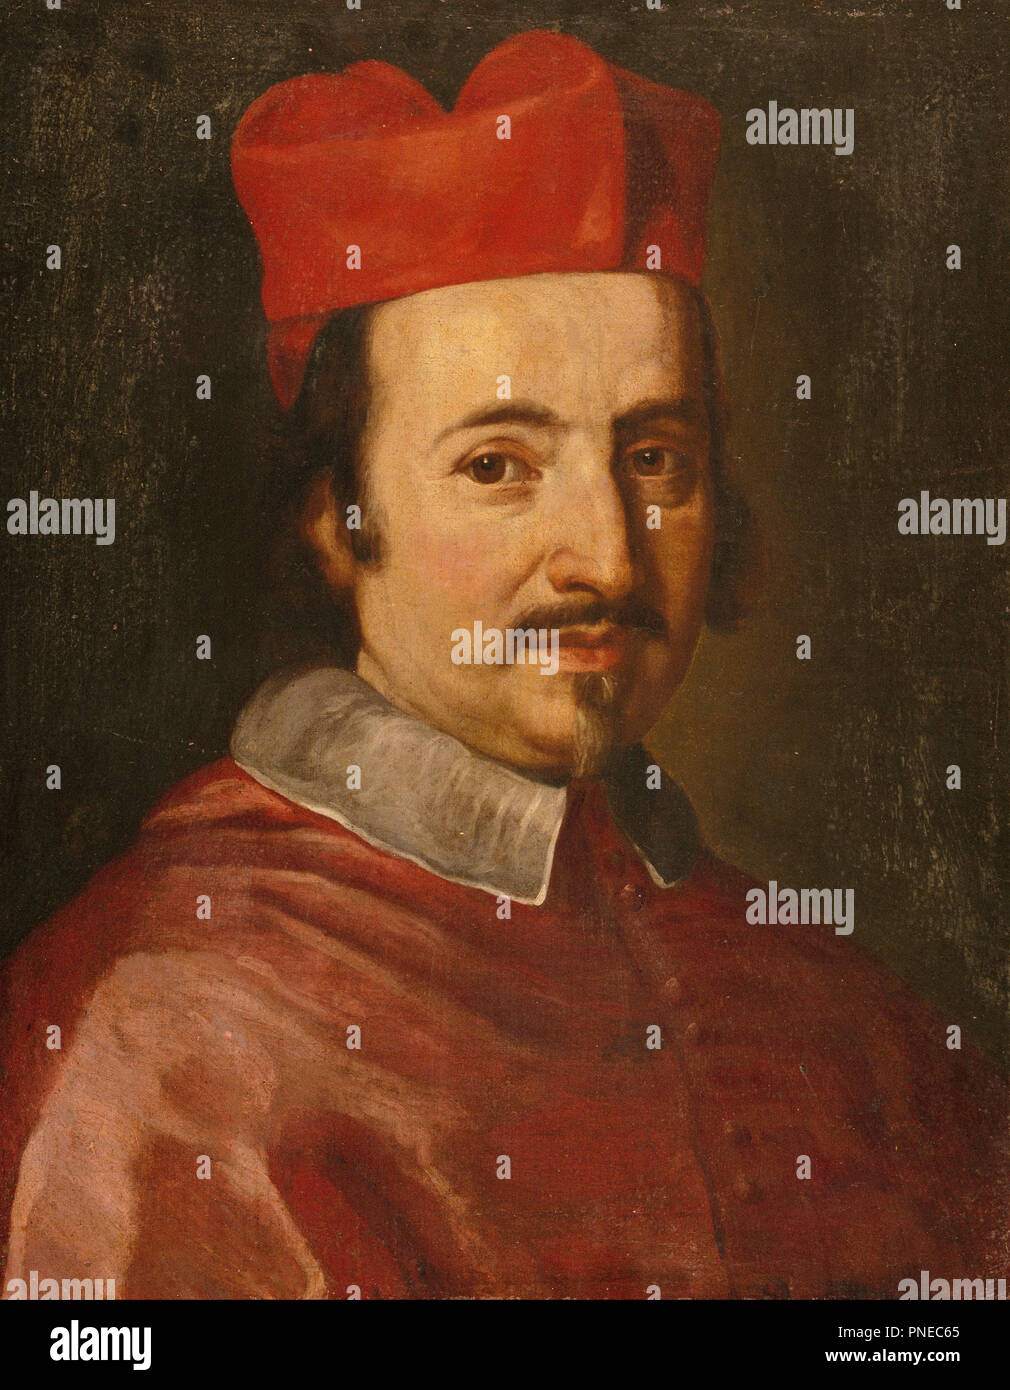 Portrait du Cardinal Federico Ubaldo Baldeschi Colonna (1624-1691). Date/Période : Ca. 1673. La peinture. Huile sur toile. Hauteur : 545 mm (21.45 in) ; Largeur : 435 mm (17.12 in). Auteur : JAKOB-FERDINAND VOET. Banque D'Images